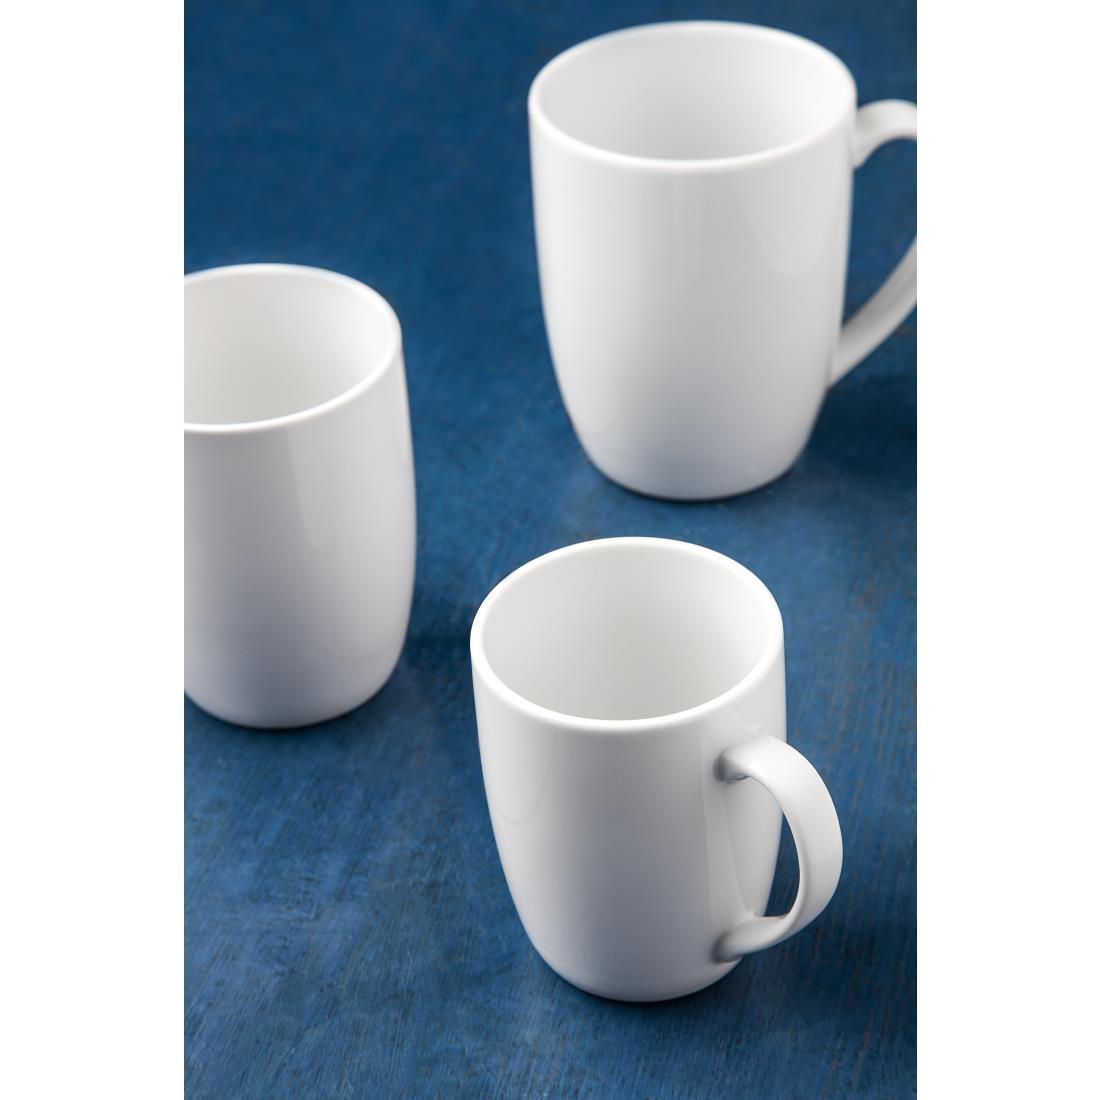 Royal Porcelain Classic White Mug 350ml (Pack of 12) - GT945  - 5